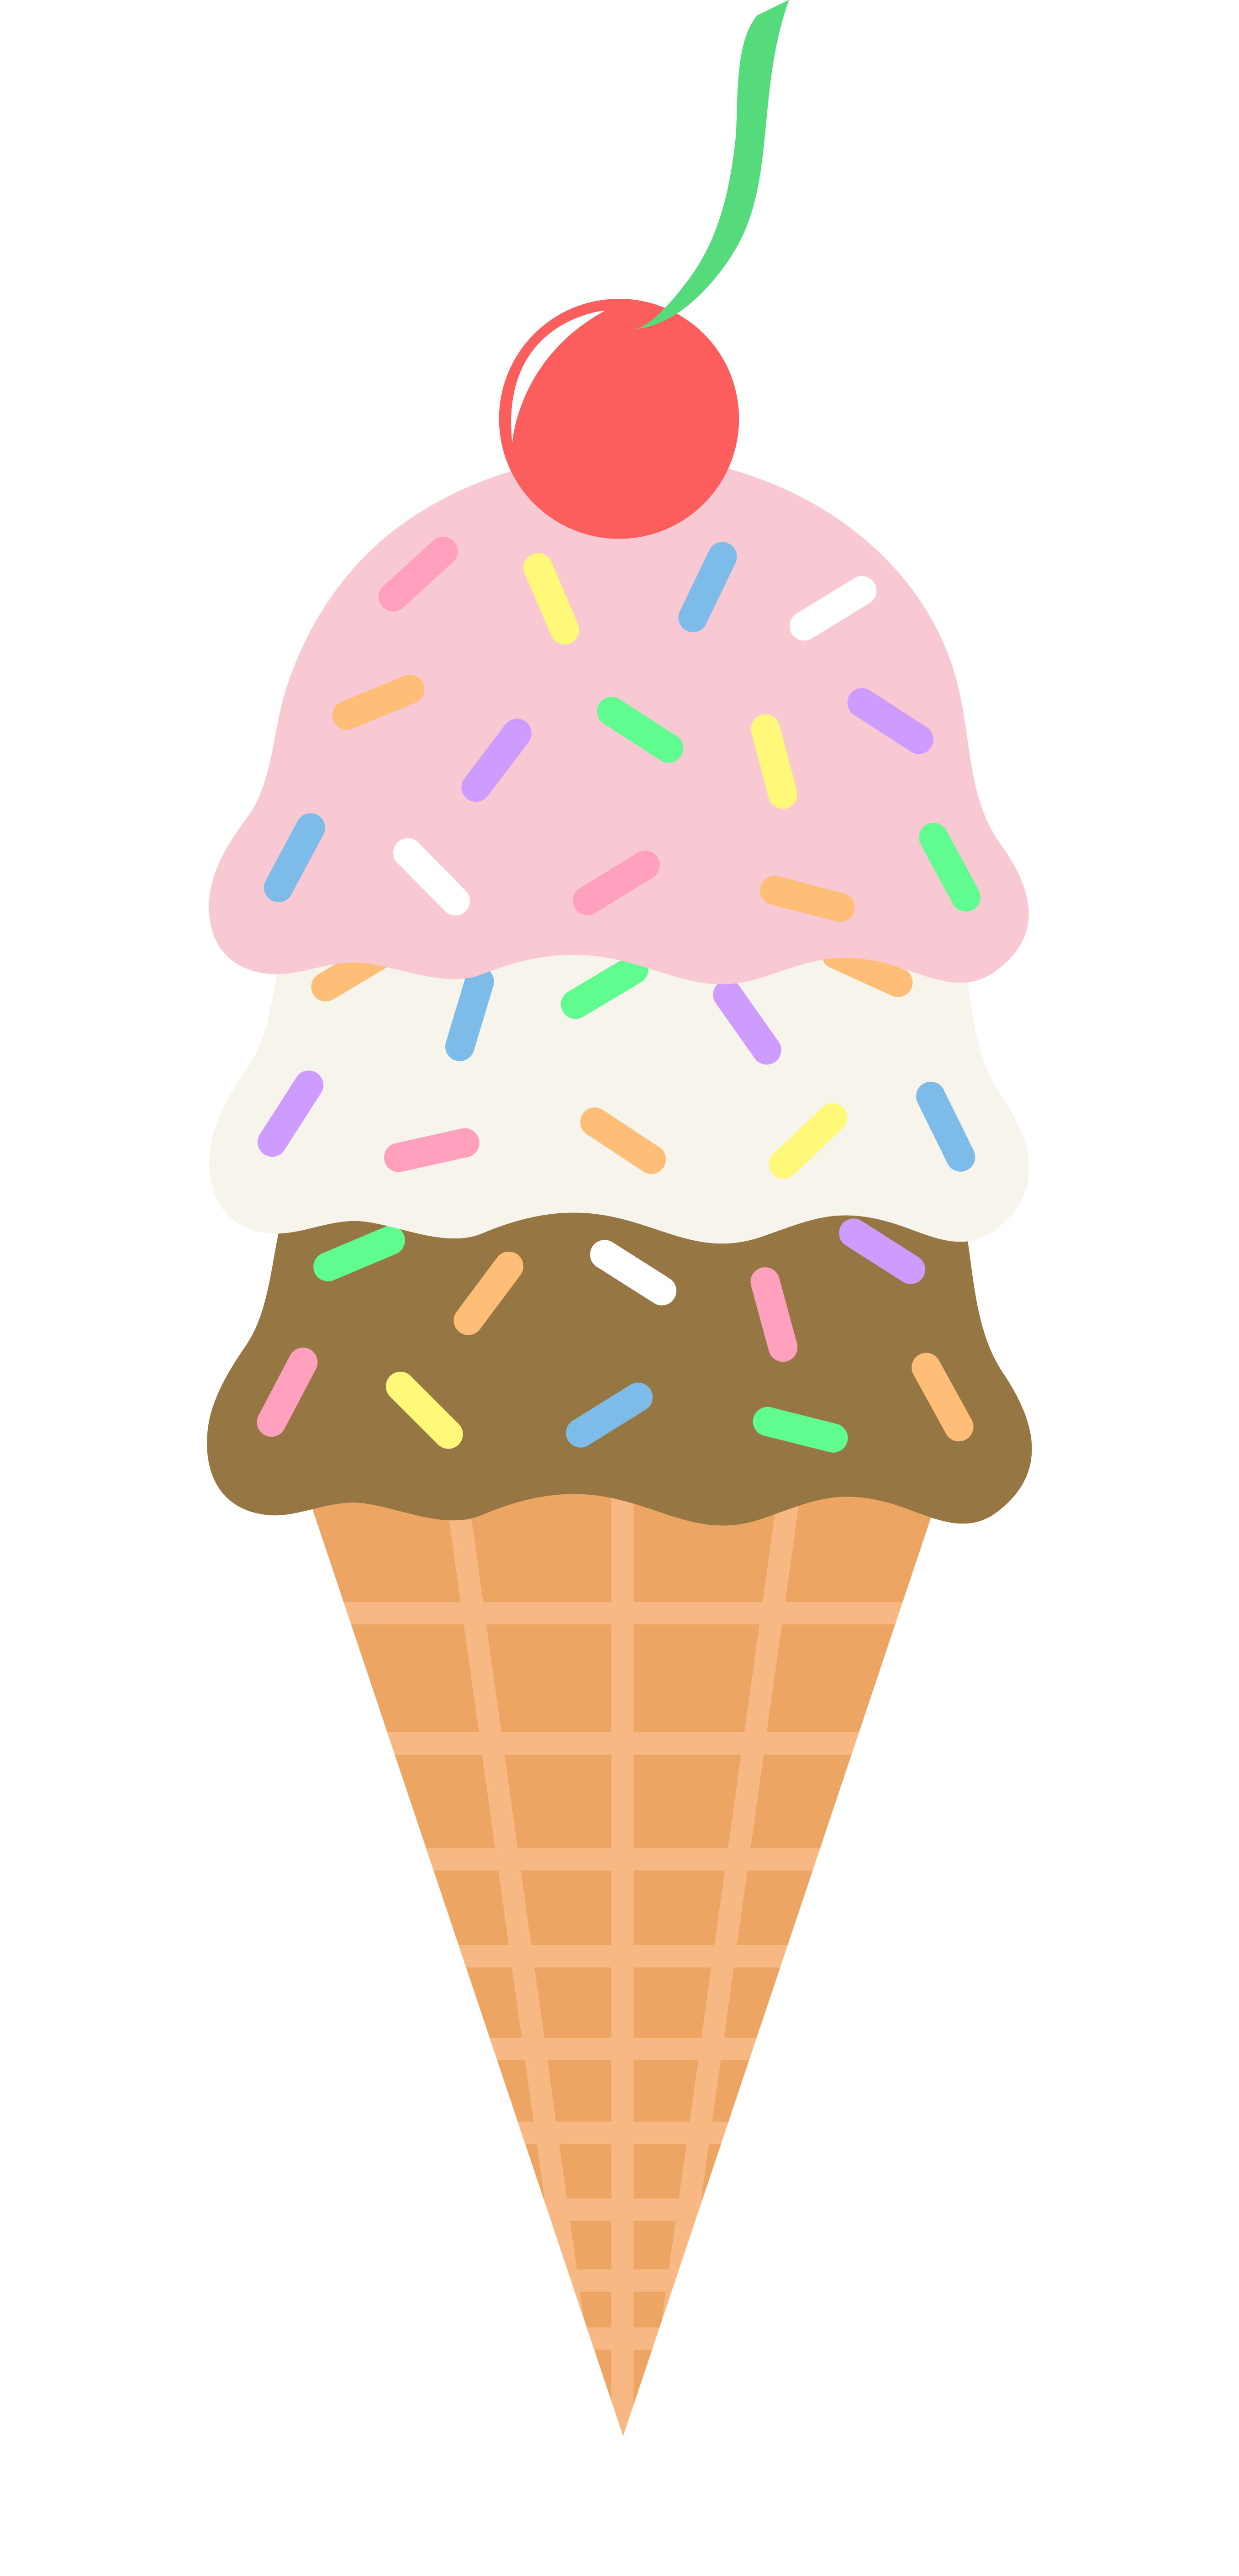 Picture Of A Ice Cream Cone Cliparts.co